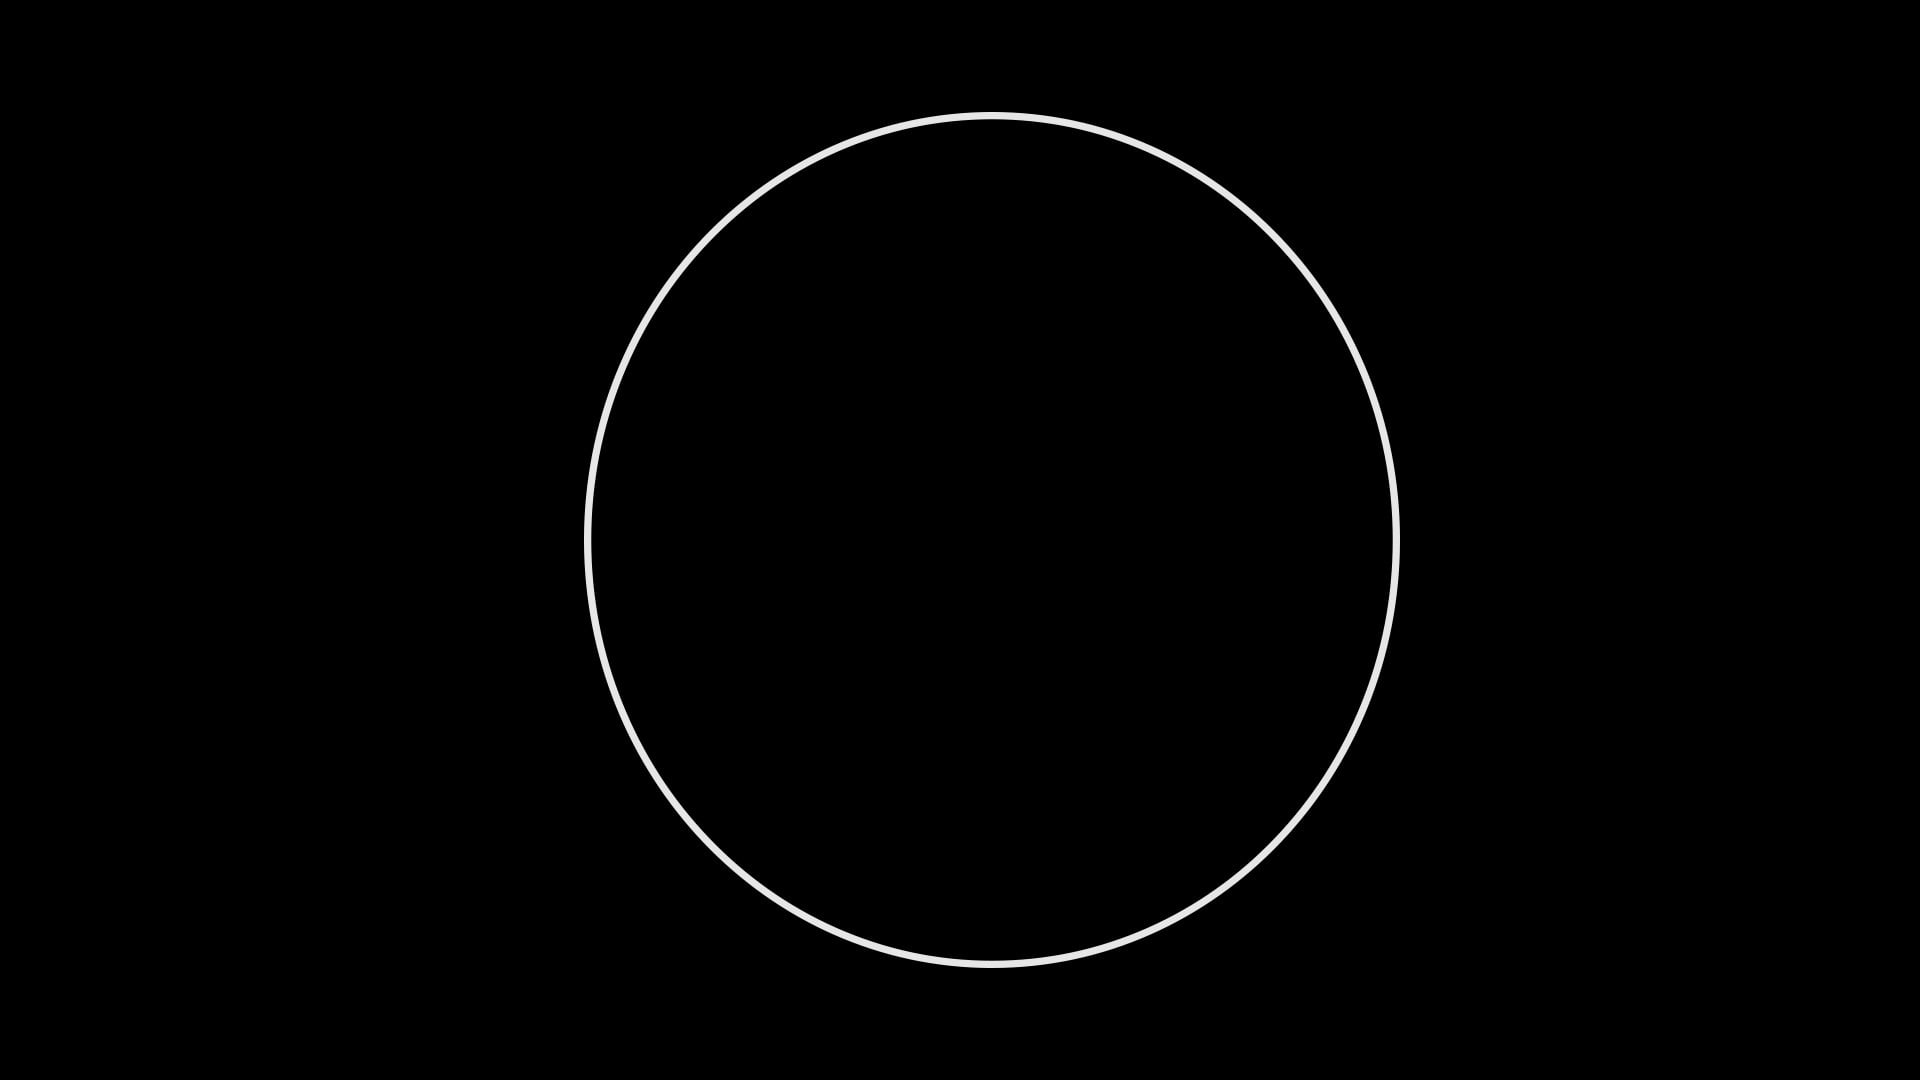 The Ring wallpaper, black, white, circle, geometric shape, studio shot